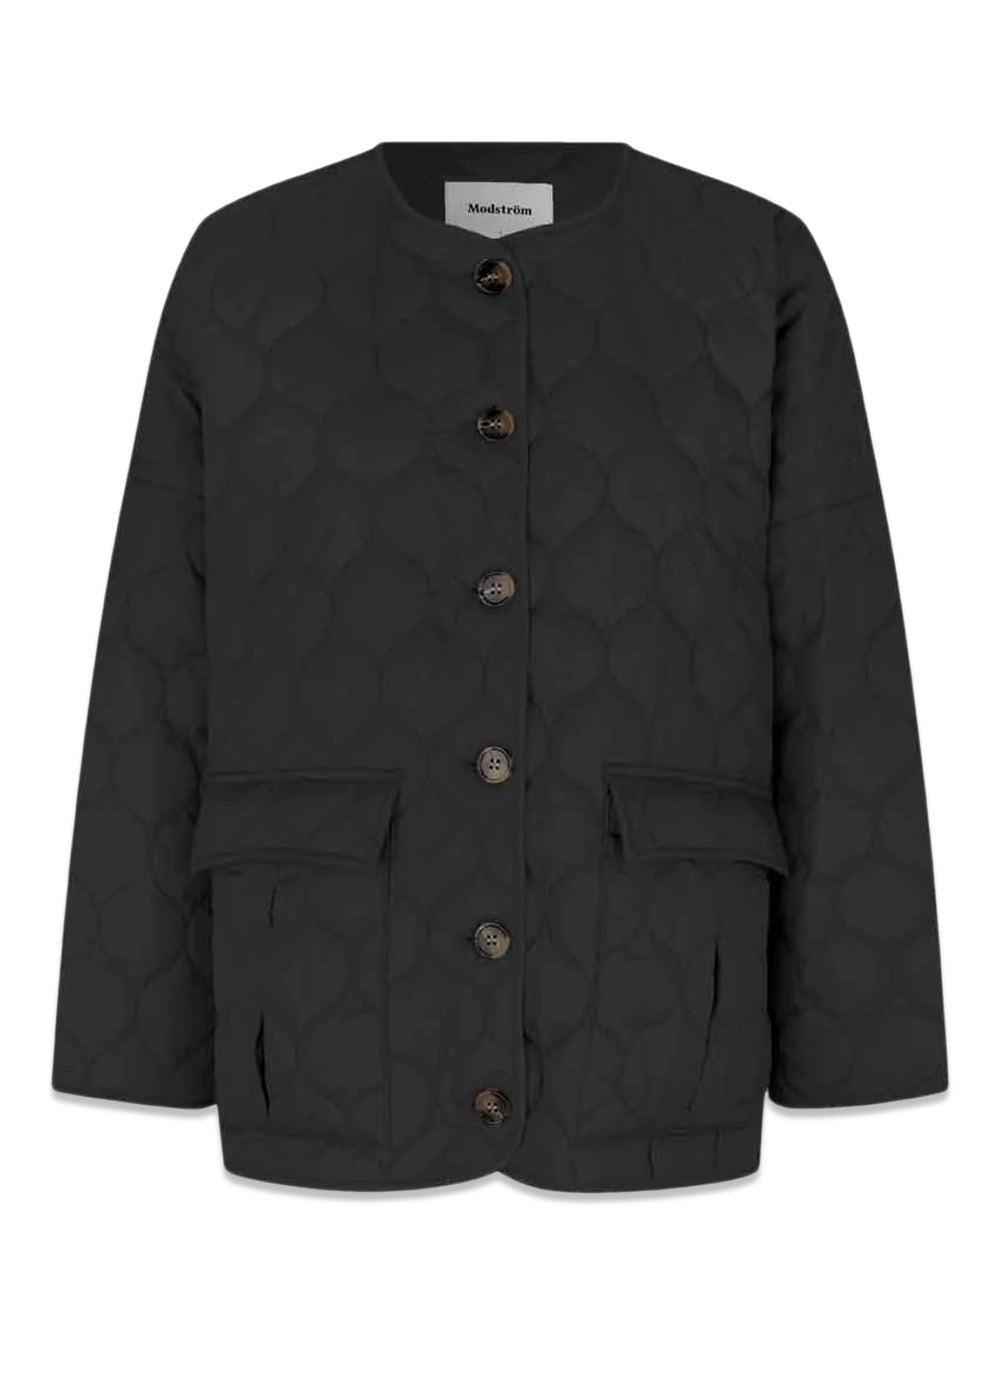 Modströms TinnyMD jacket -Black. Køb frakker her.